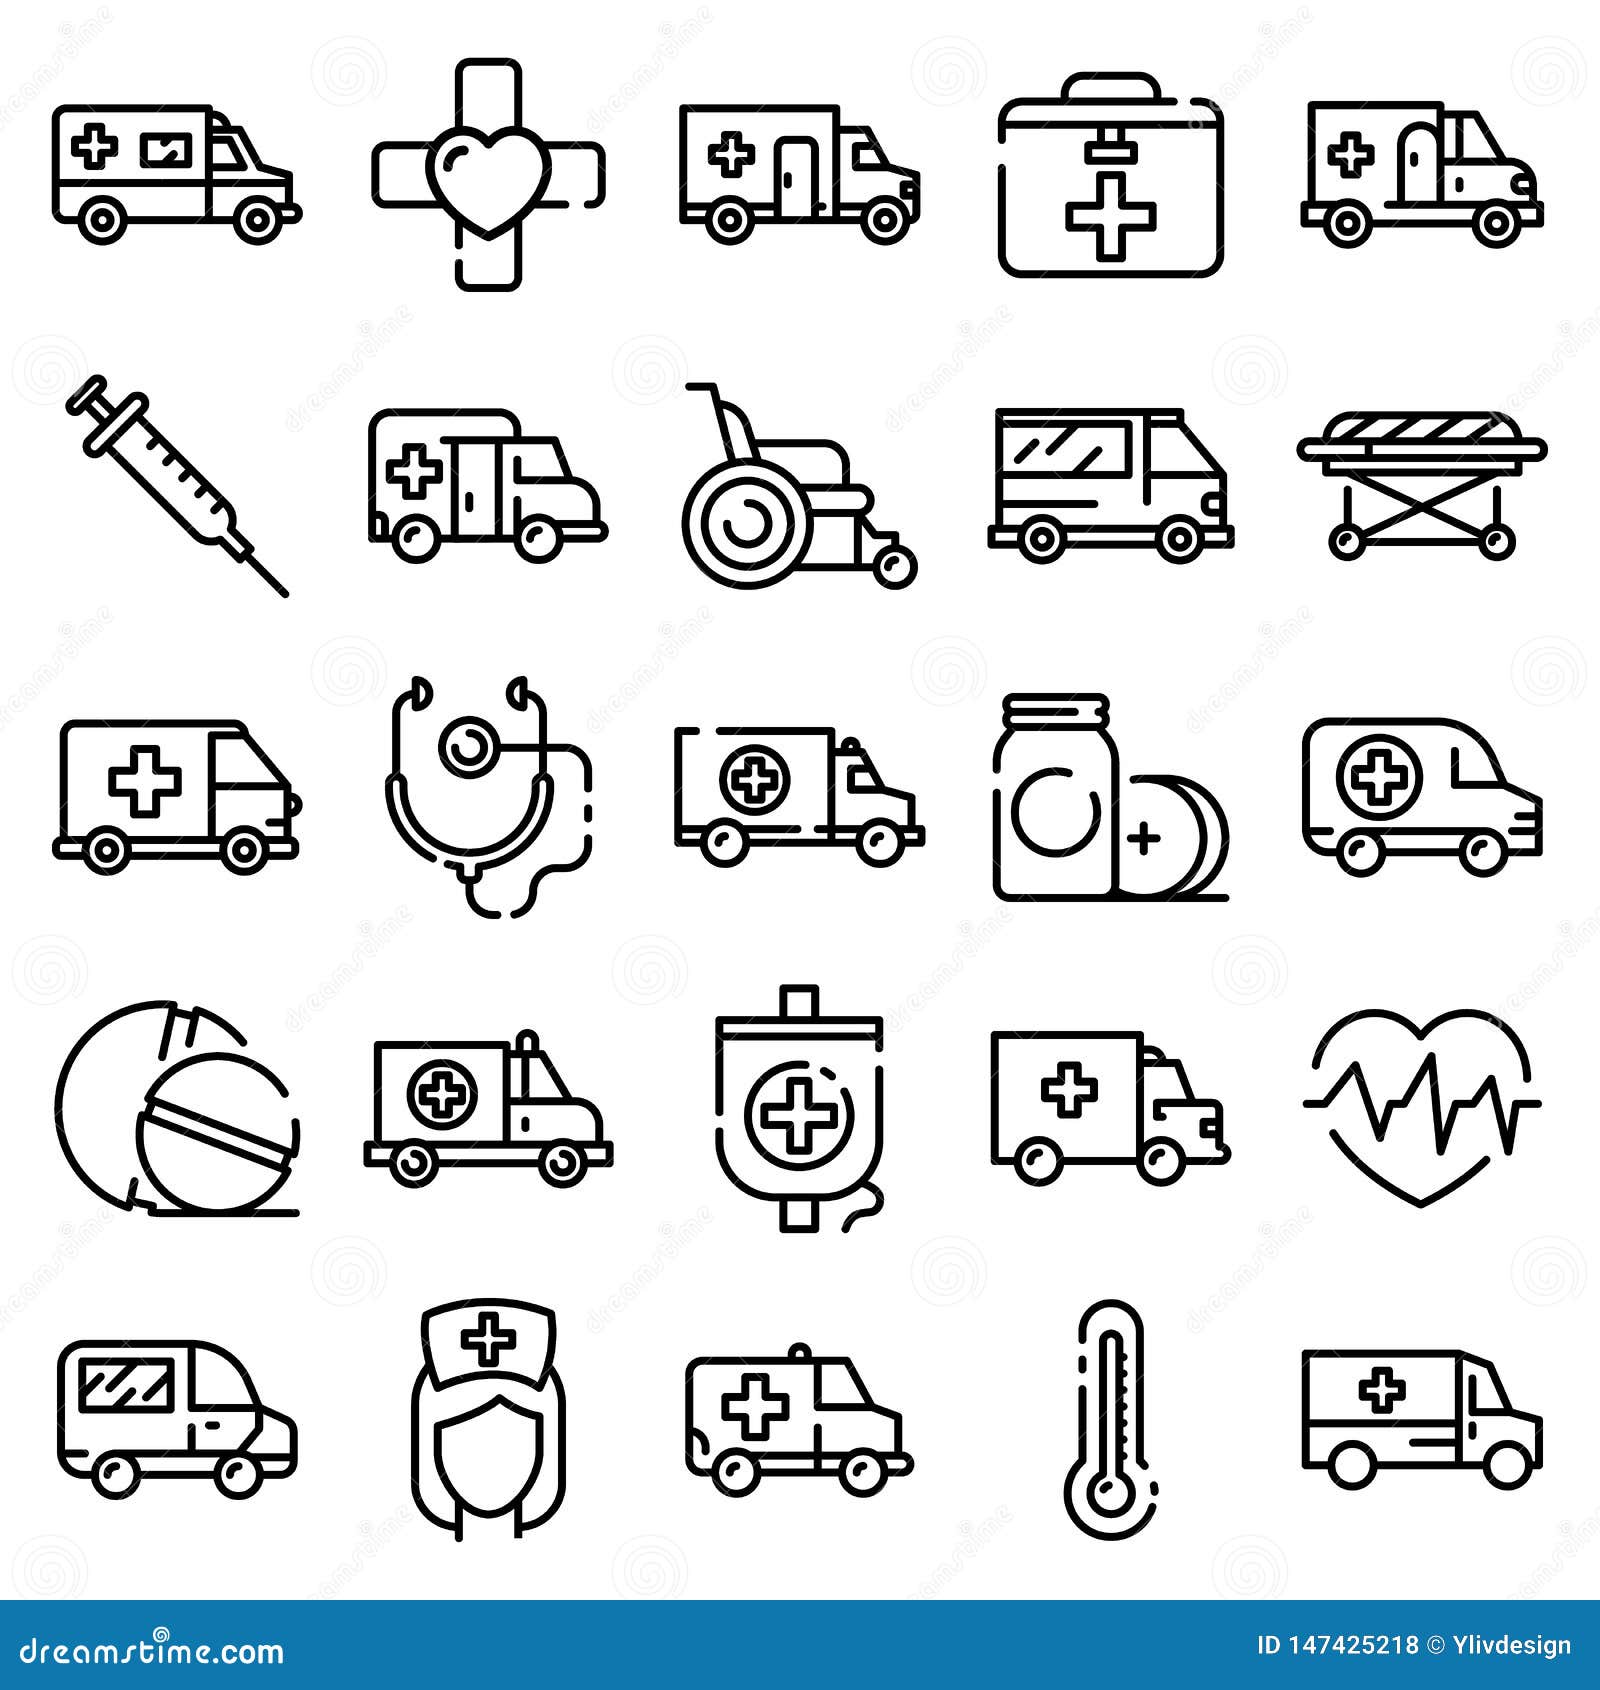 ambulance icons set, outline style